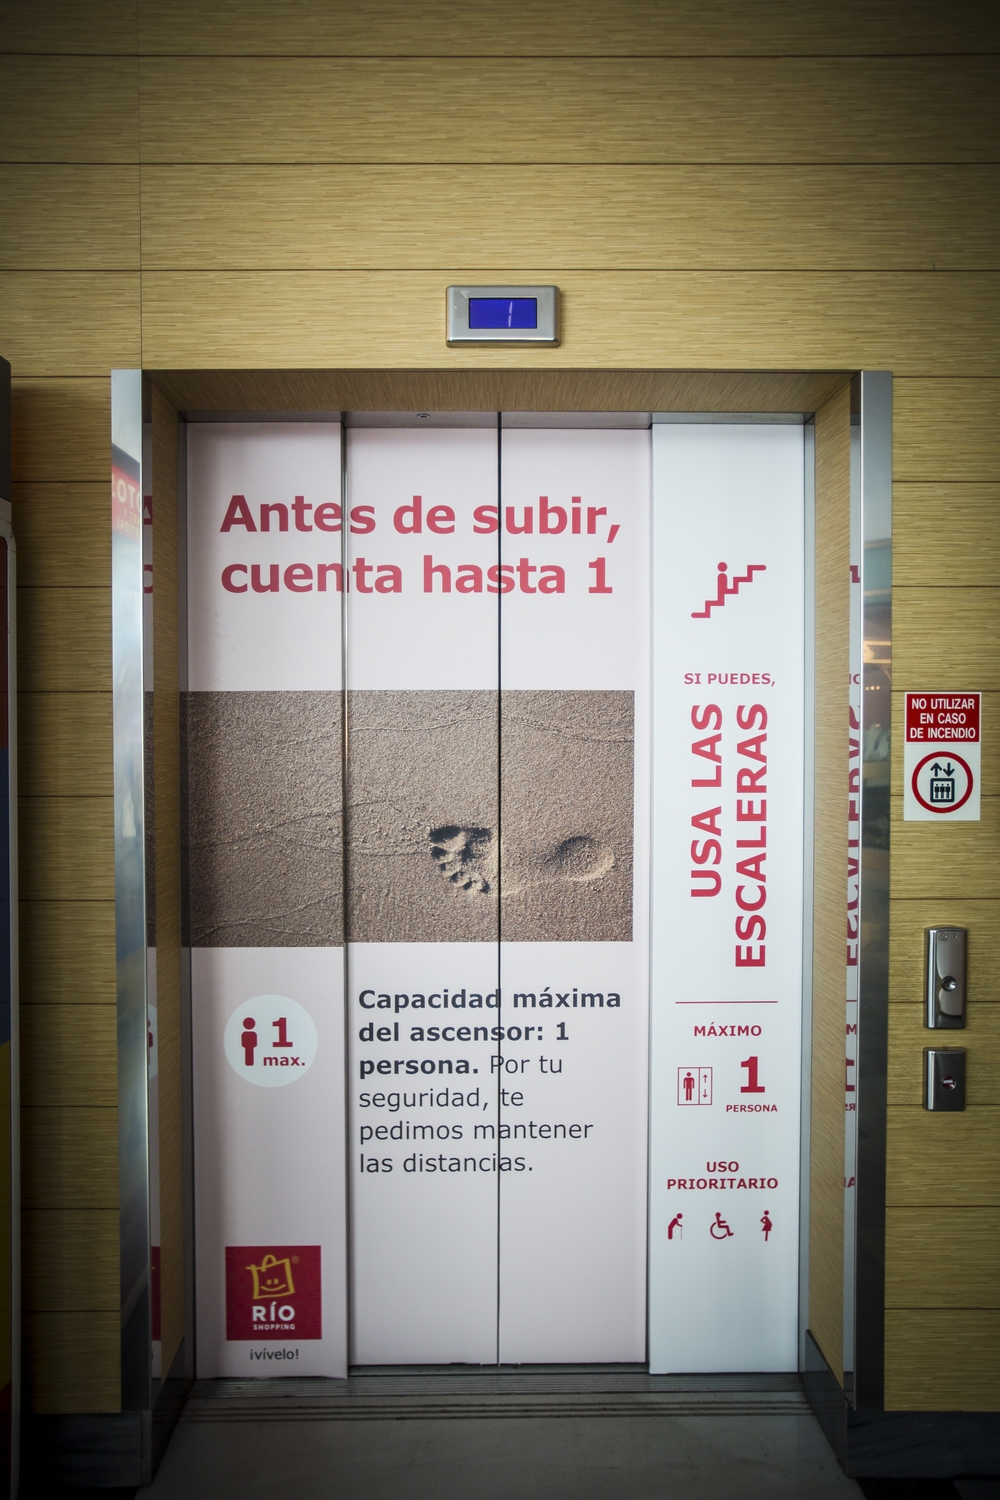 Preparativos para la apertura de los centros comerciales en Valladolid  / JONATHAN TAJES